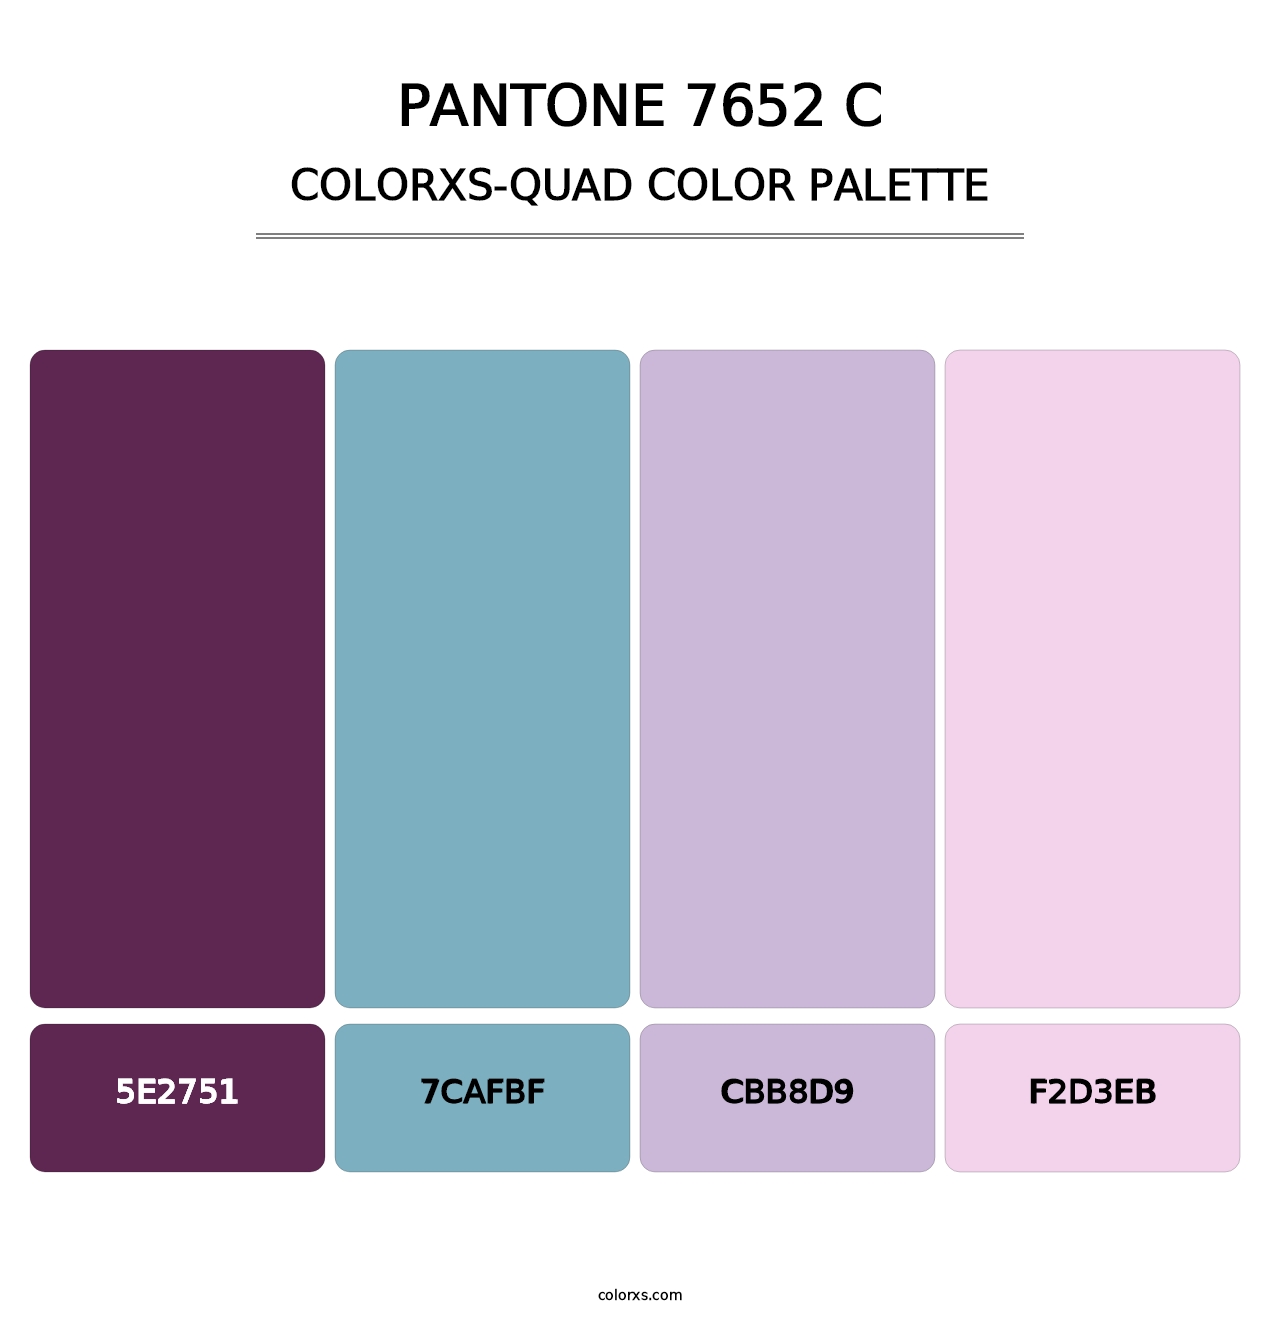 PANTONE 7652 C - Colorxs Quad Palette